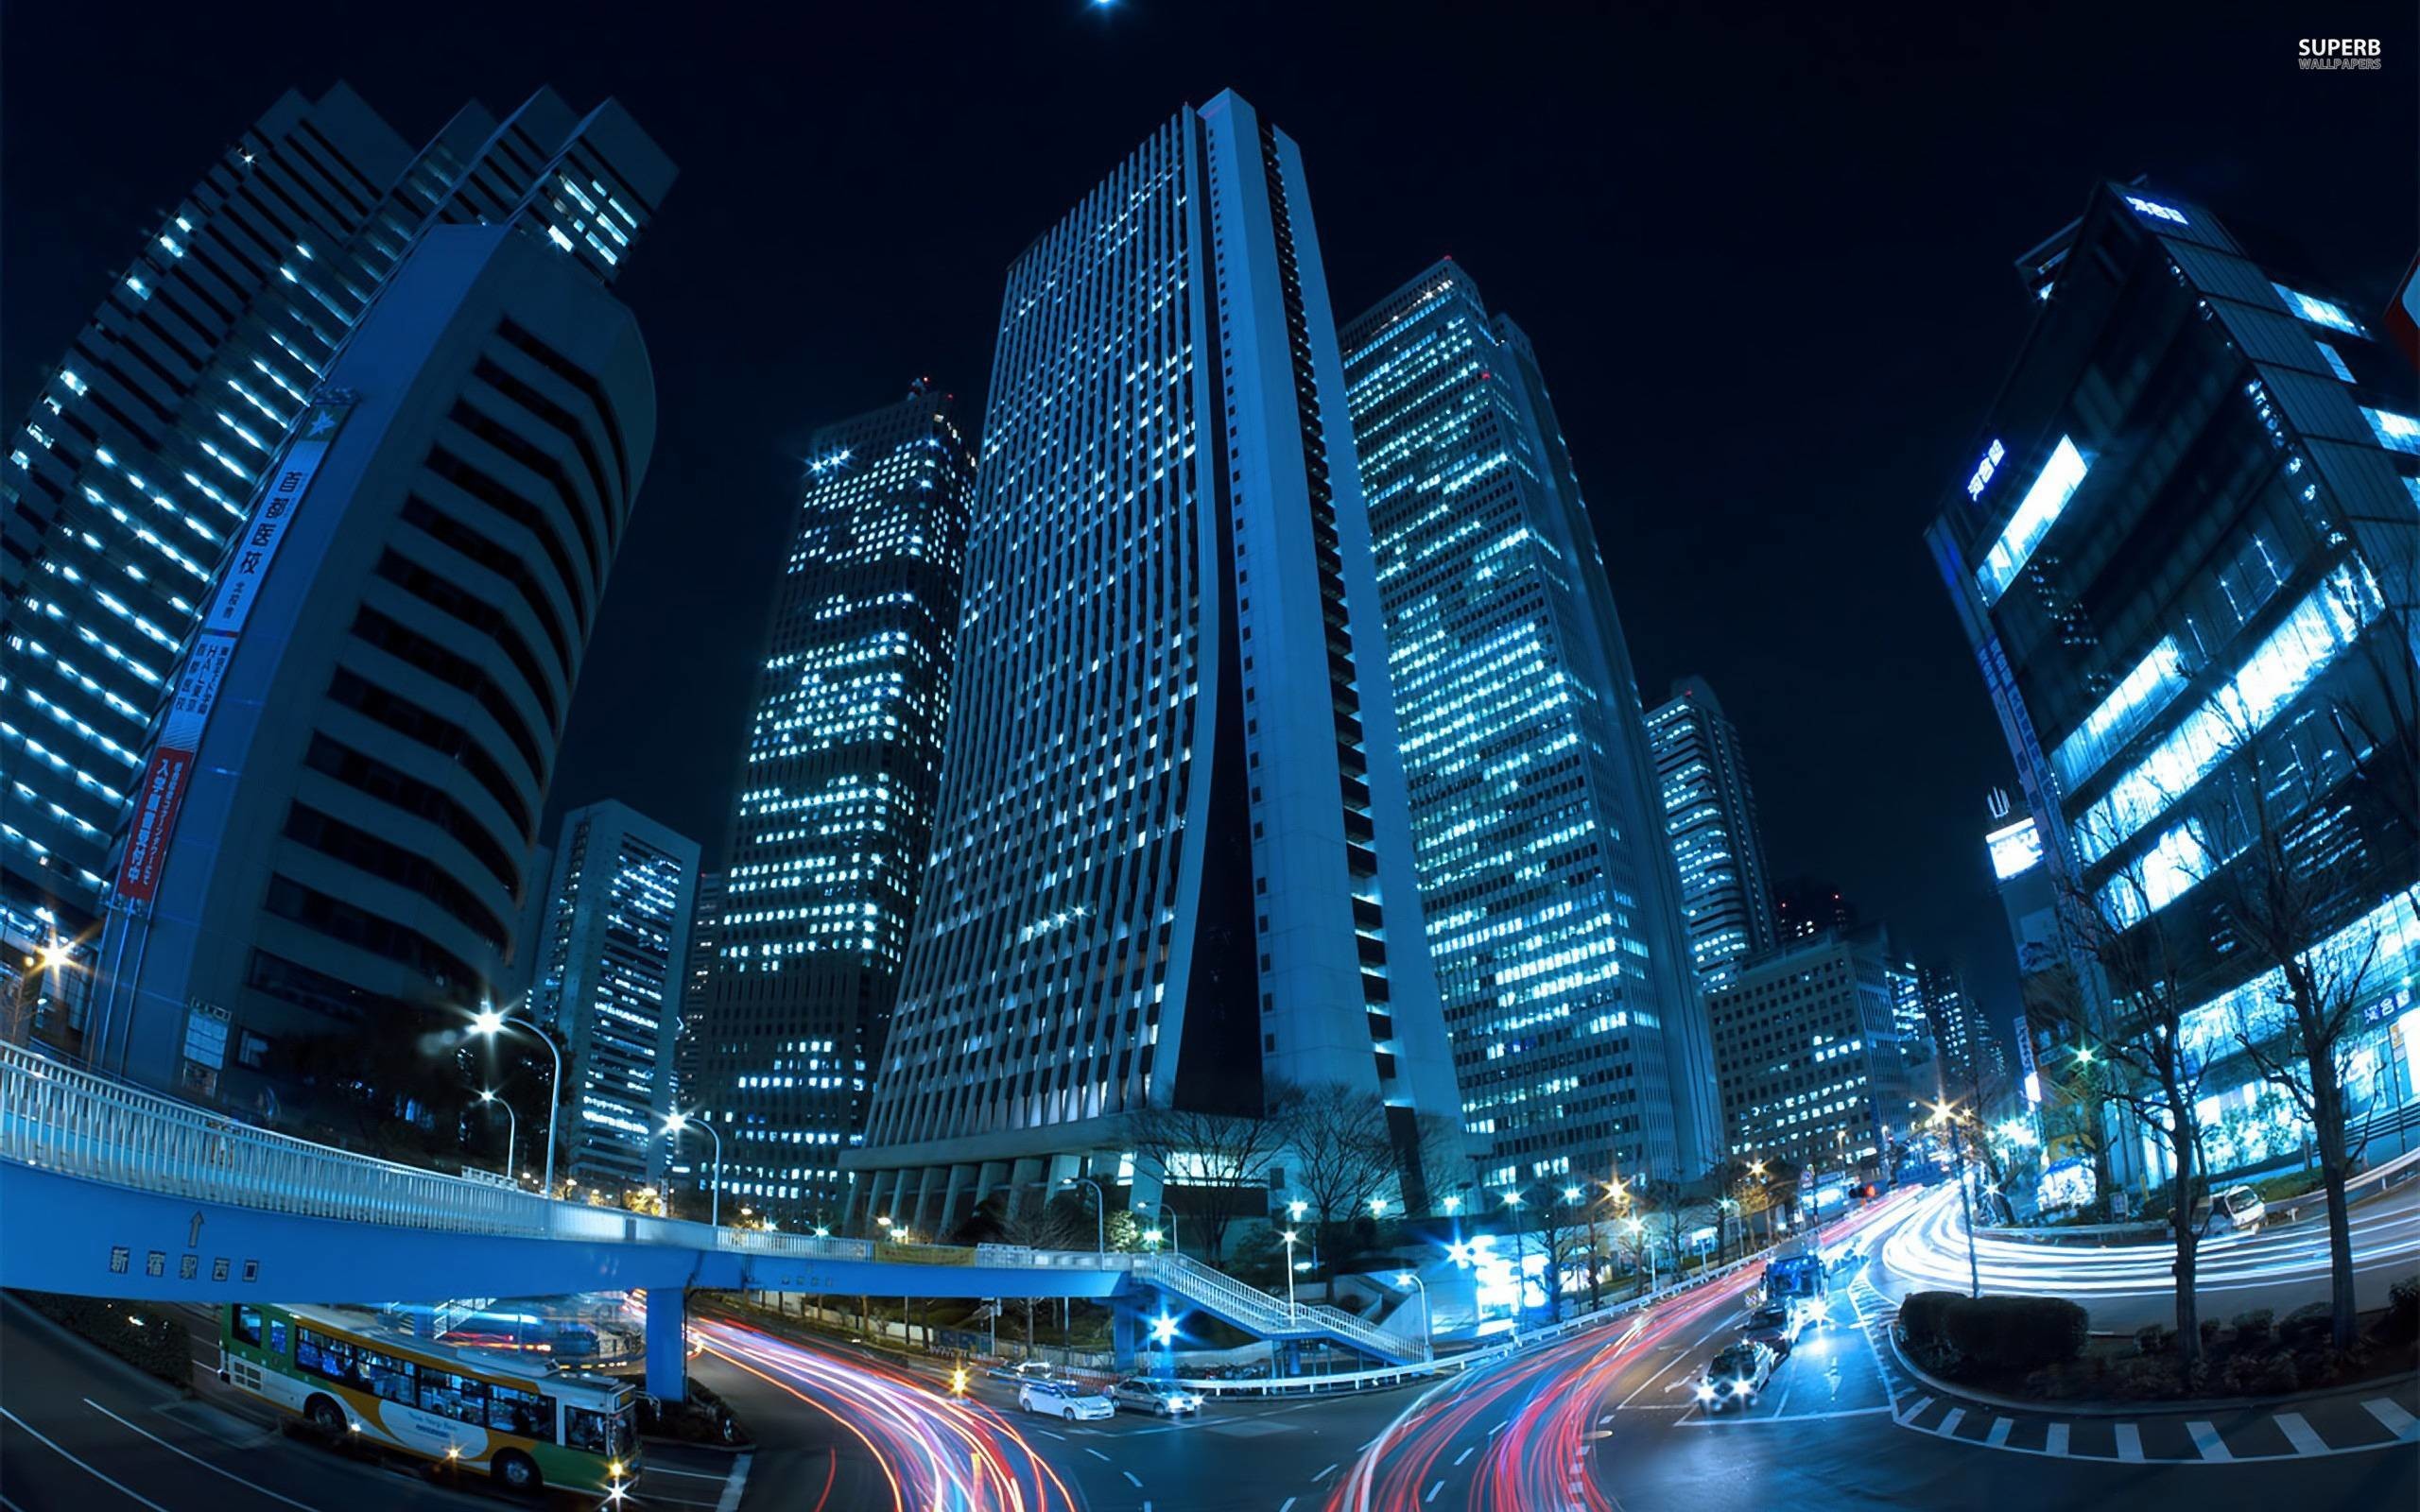 2560x1600 Shinjuku, Tokyo at night wallpaper - World wallpapers - #